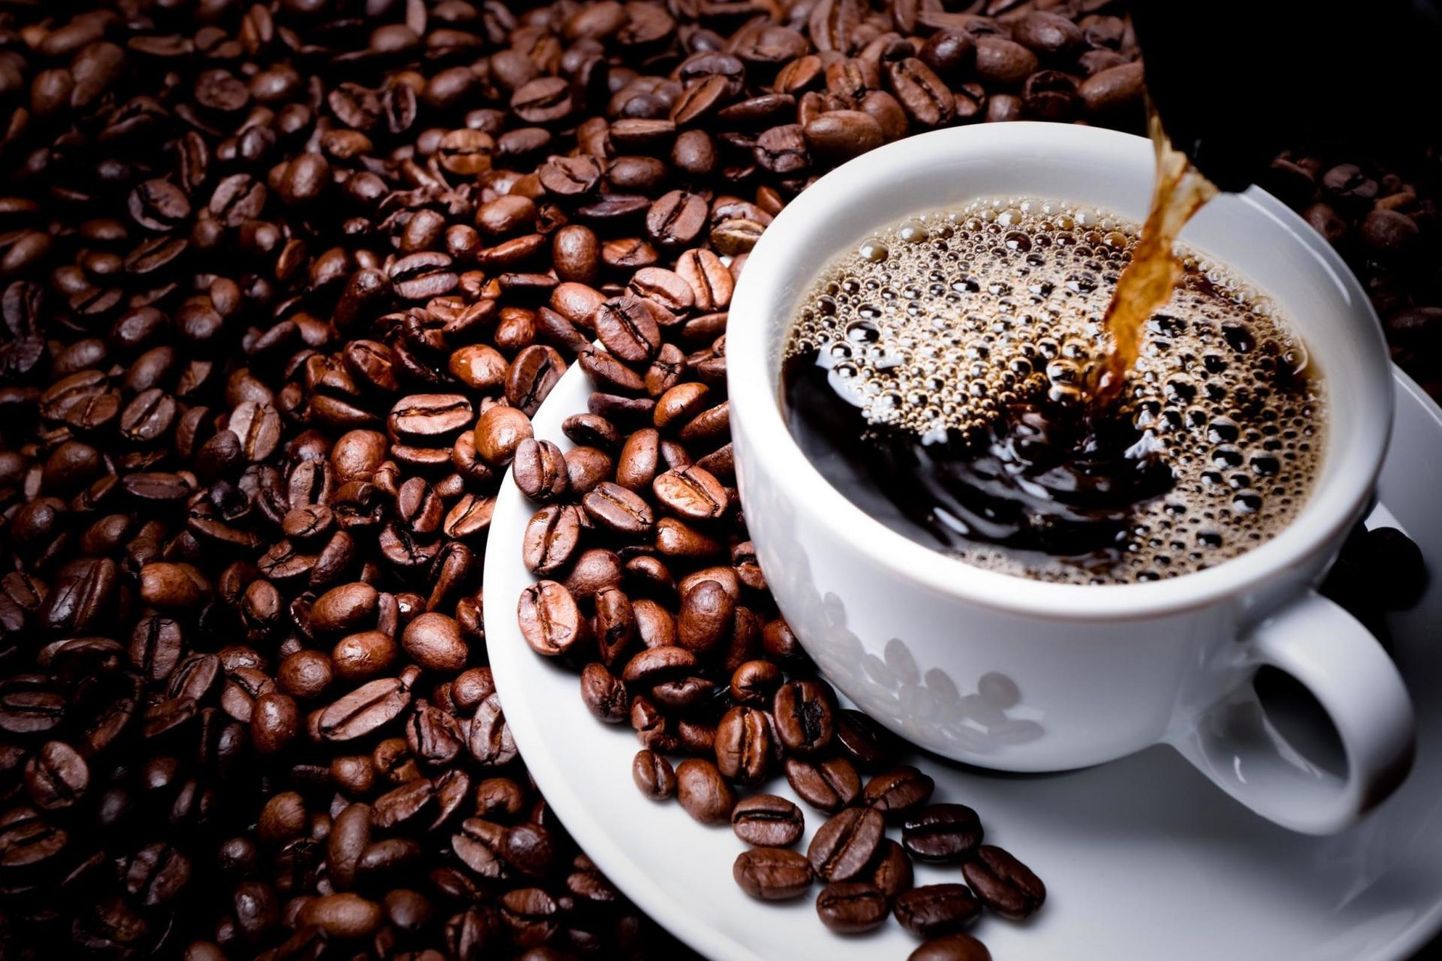 Eestlased jäävad maailma rahvaste seas kohv tarbimise poolest esikümne piirimaile.